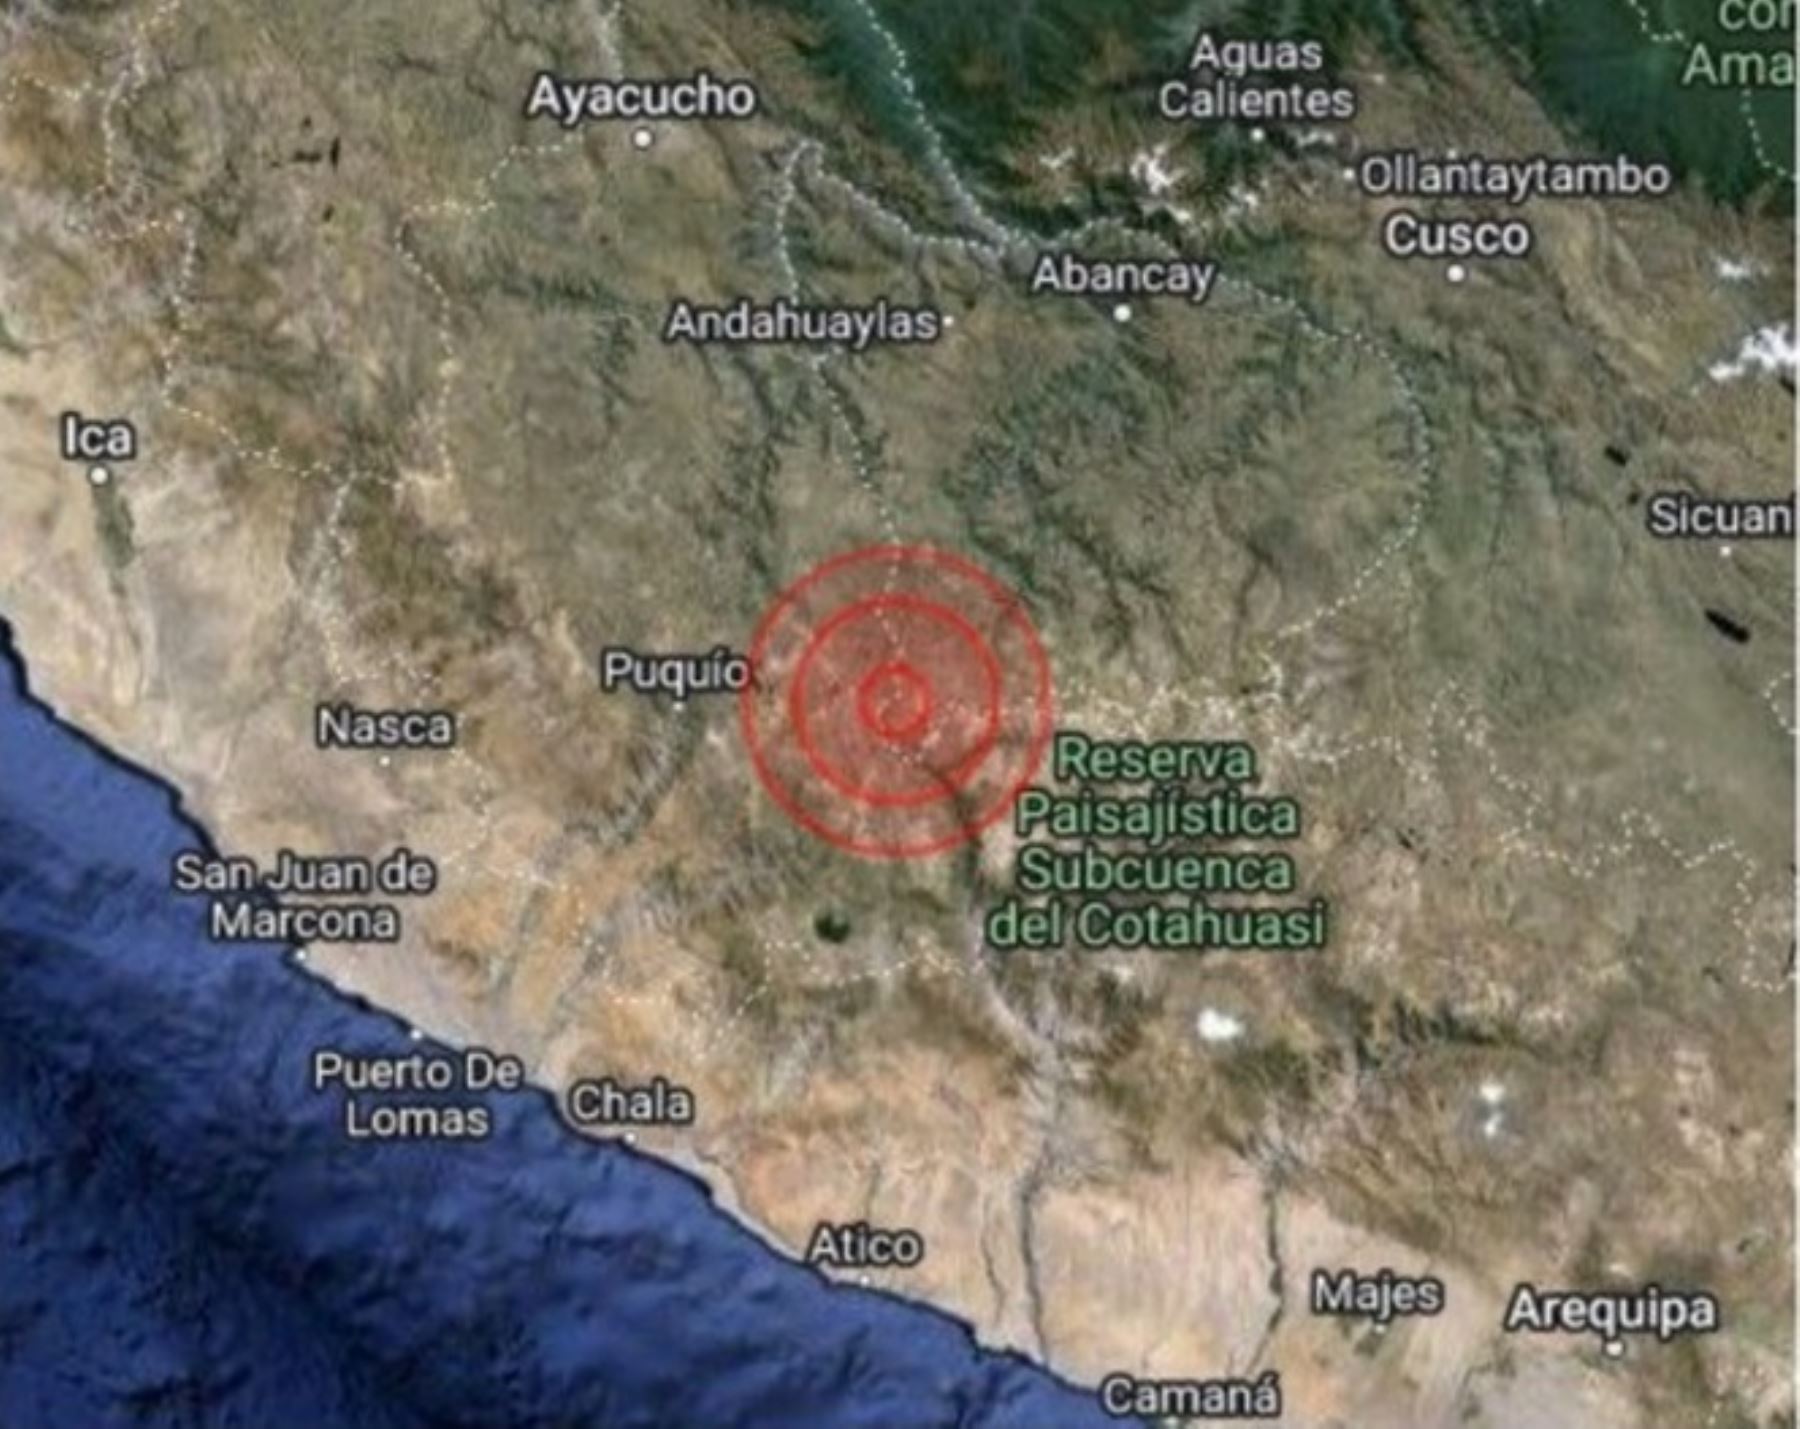 Epicentro del fuerte sismo de magnitud 4.7 se localizó en el distrito de Coracora, provincia de Parinacochas, en Ayacucho.